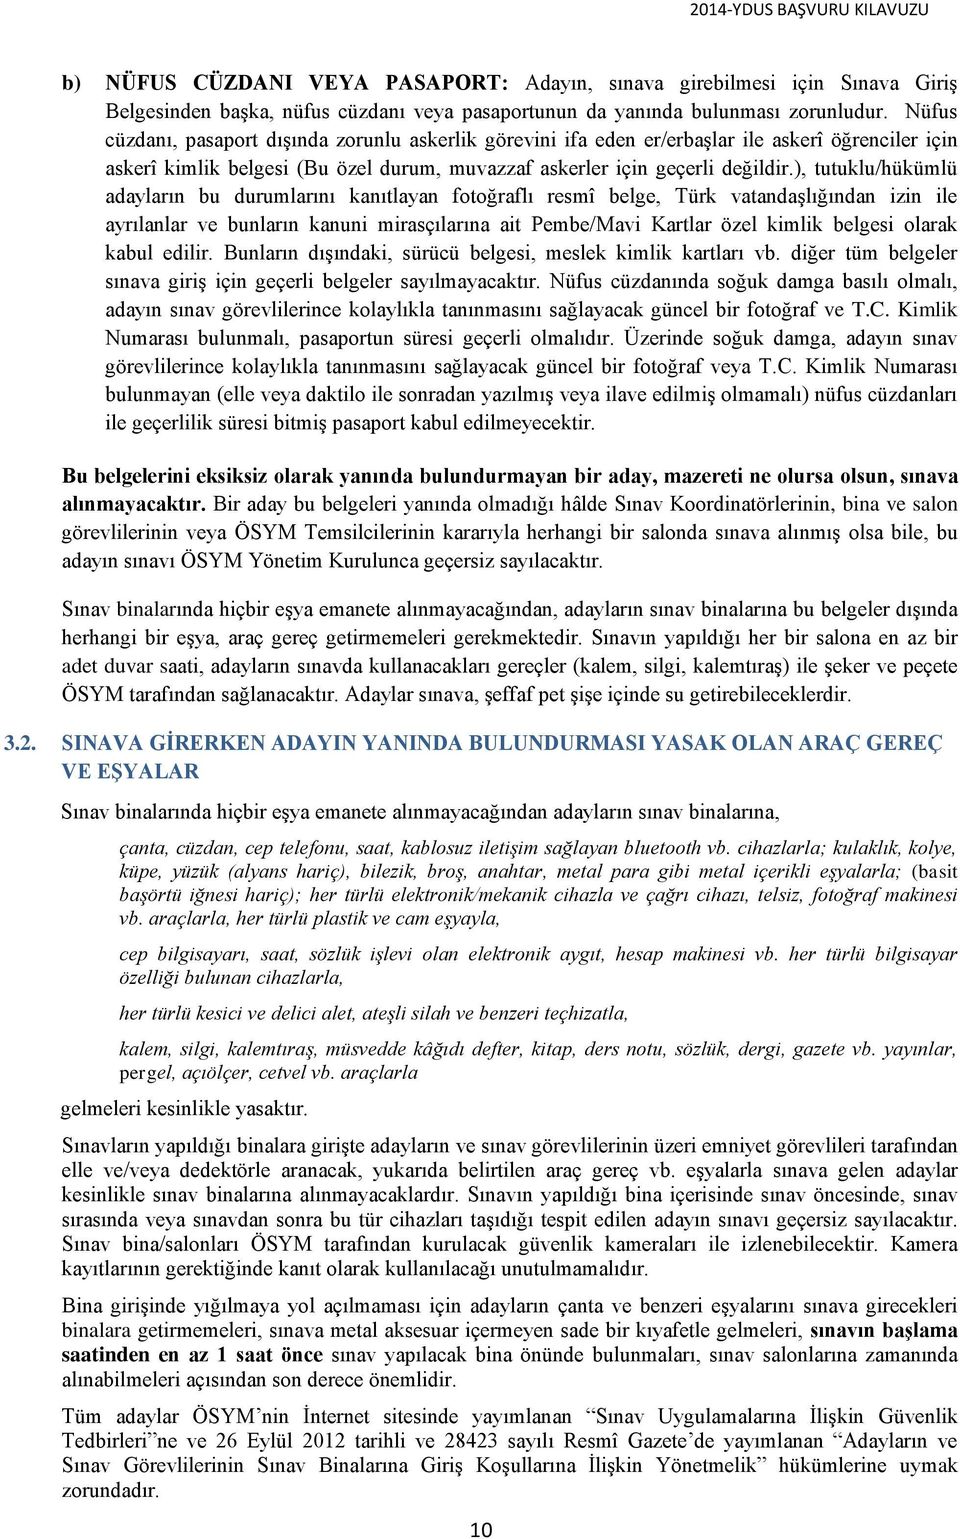 ), tutuklu/hükümlü adayların bu durumlarını kanıtlayan fotoğraflı resmî belge, Türk vatandaşlığından izin ile ayrılanlar ve bunların kanuni mirasçılarına ait Pembe/Mavi Kartlar özel kimlik belgesi